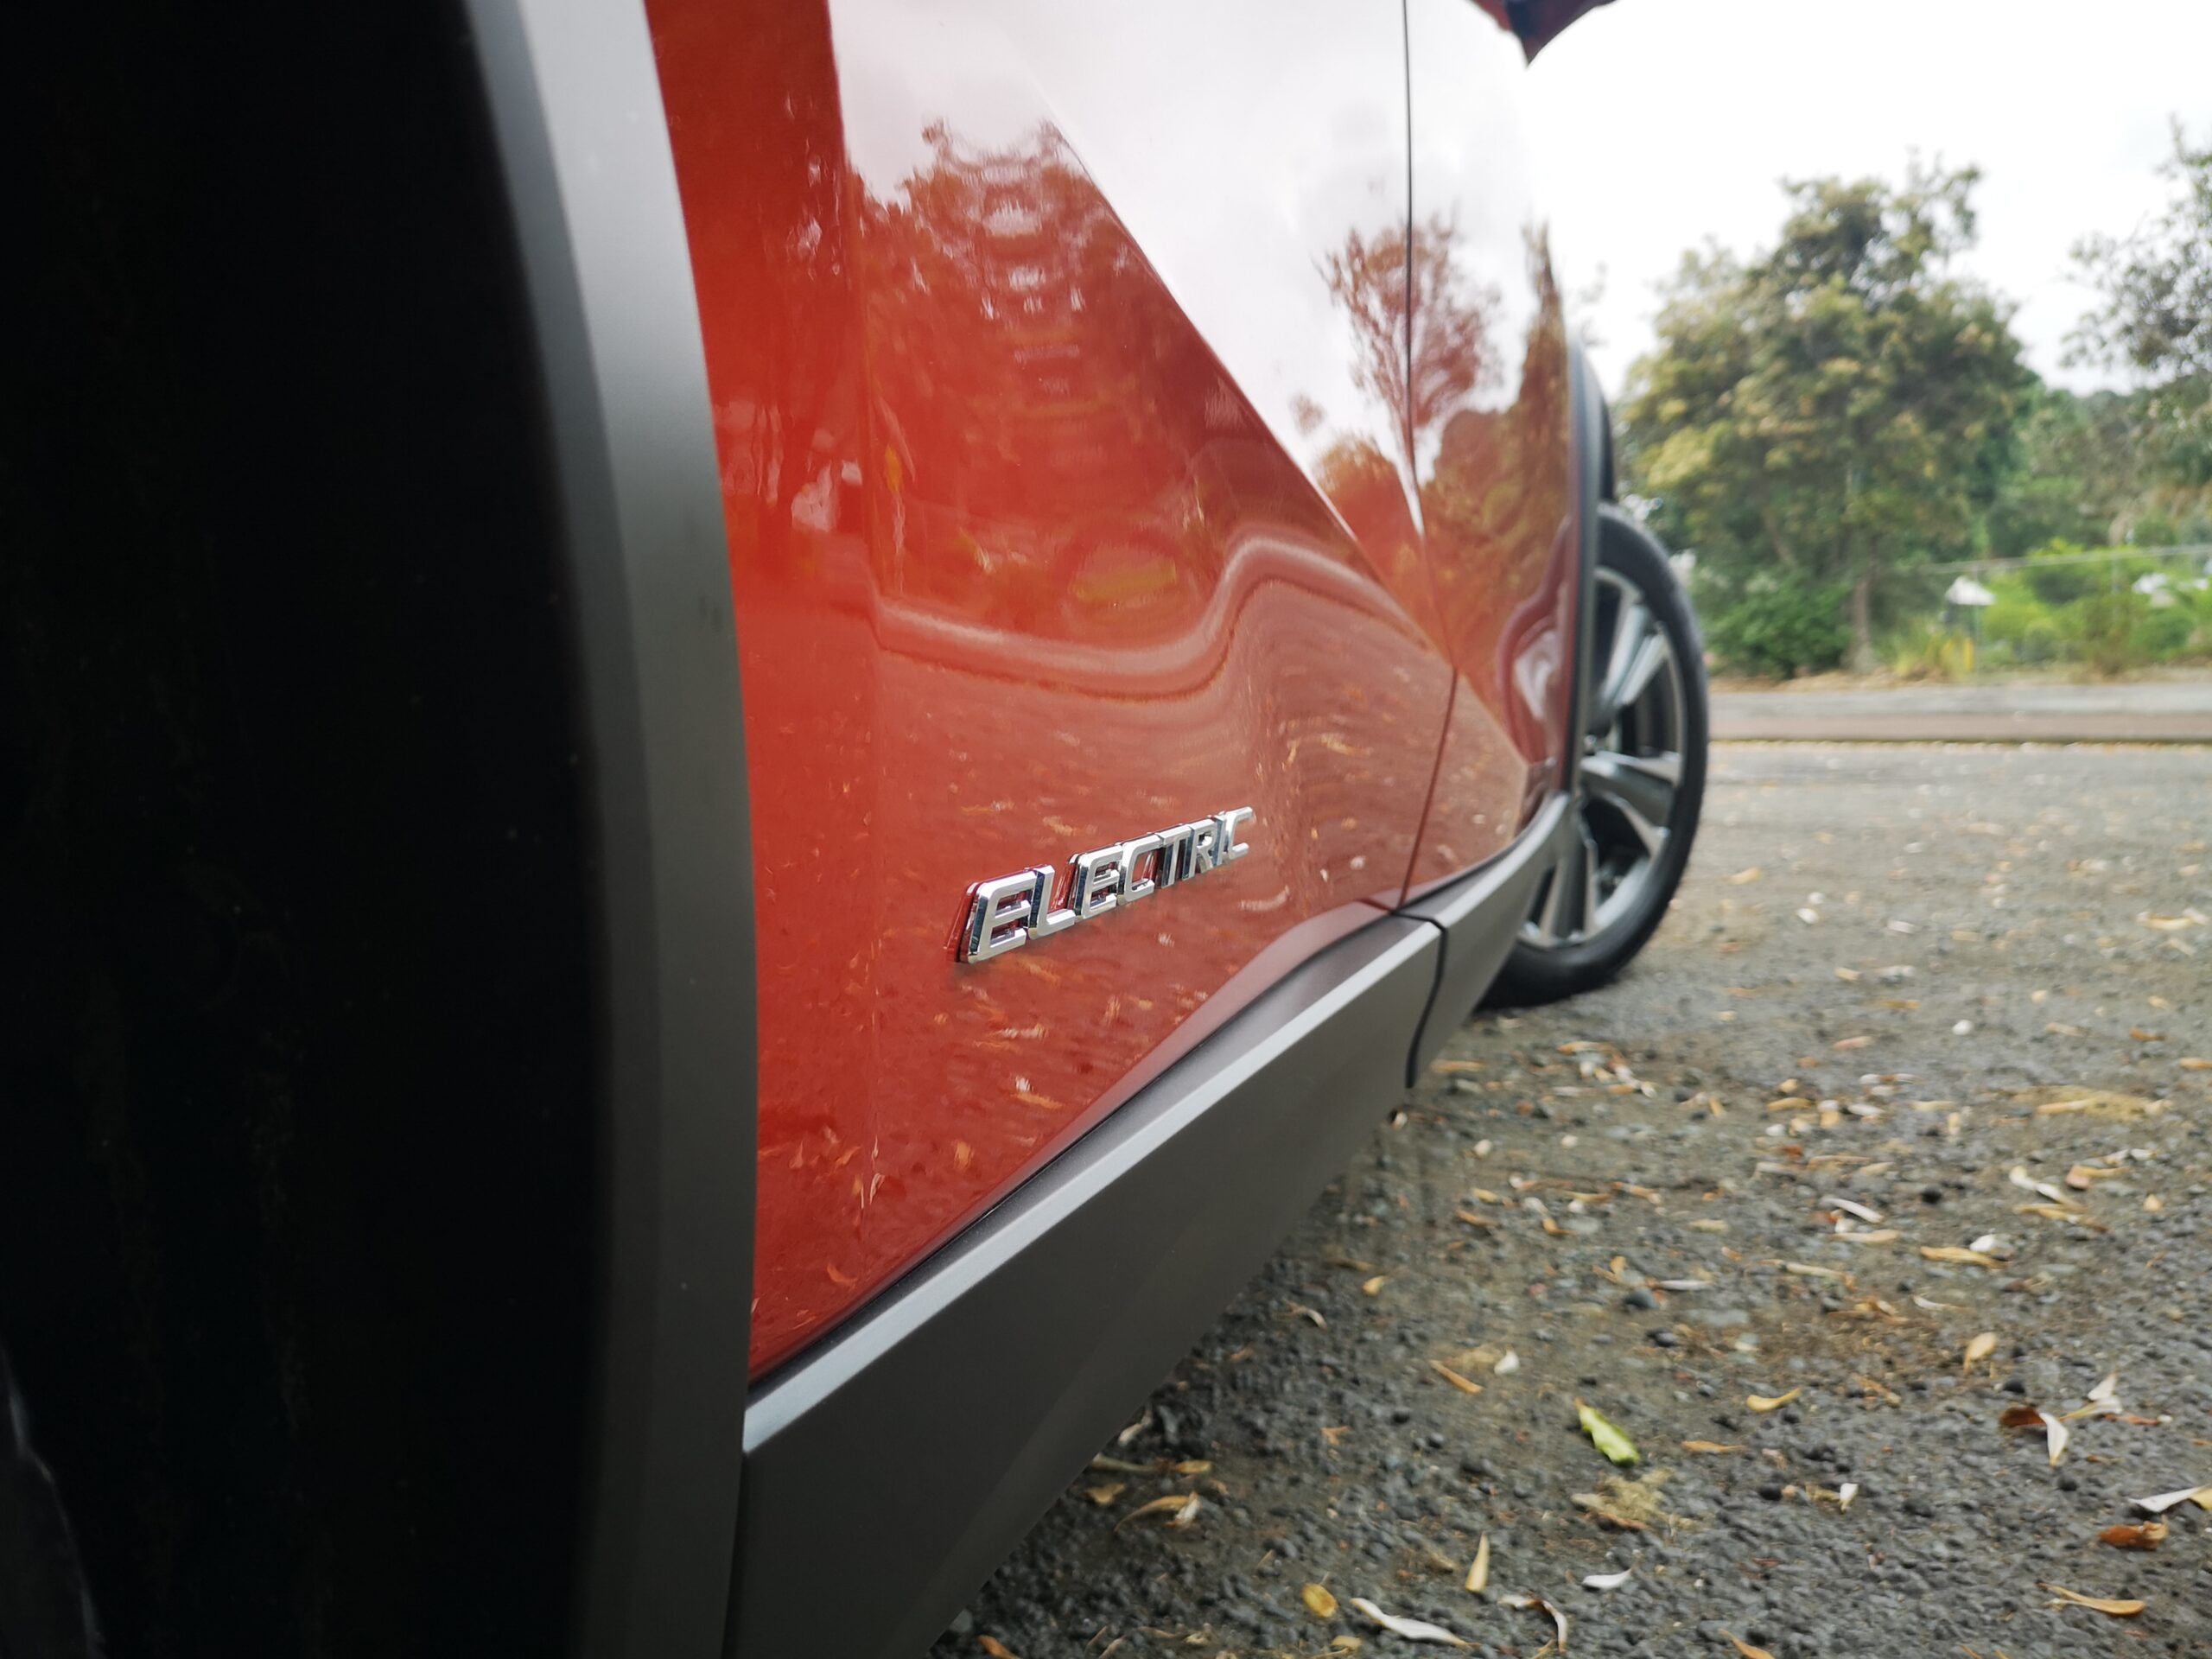 Lexus UX 300e review NZ